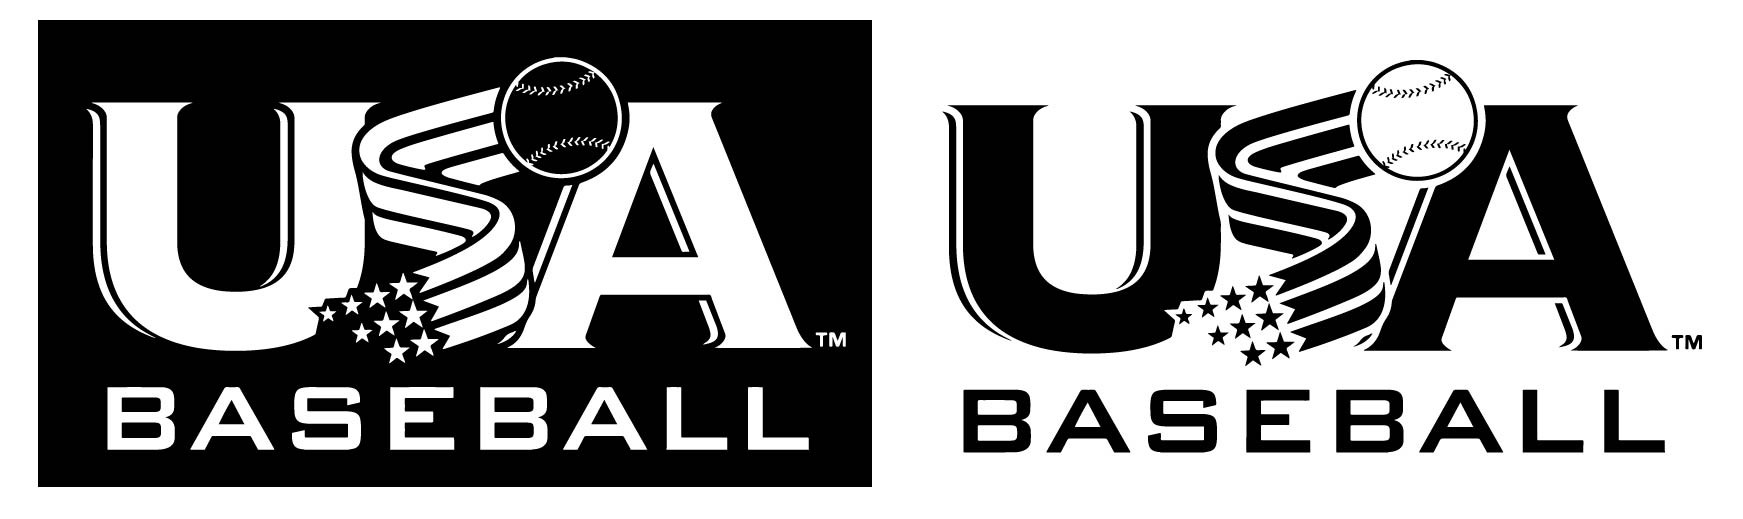 USA Baseball Logos